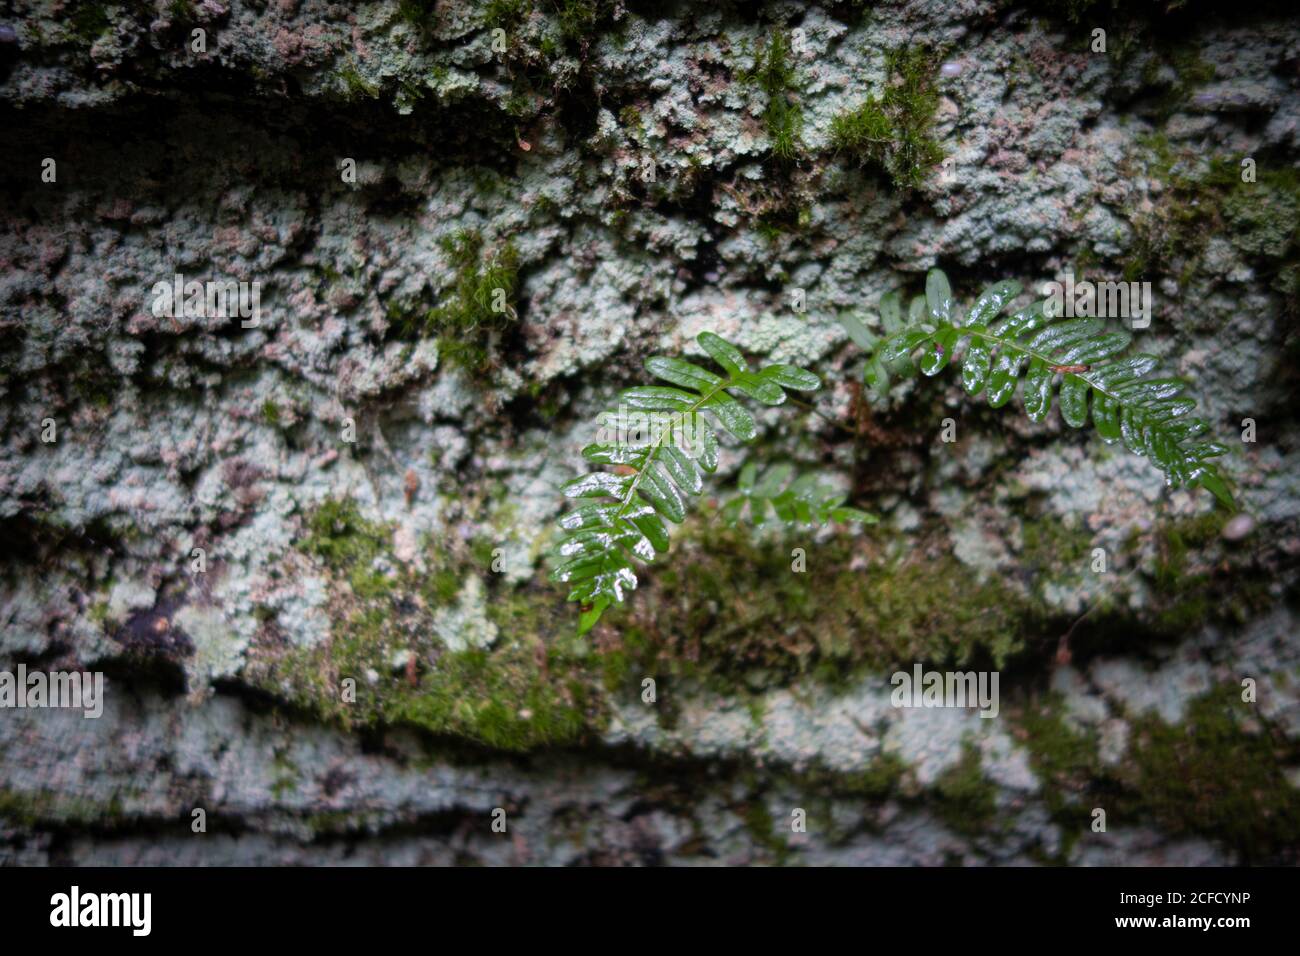 Mousse sur les rochers au parc panoramique de Panama Rocks, comté de Chautauqua, New York, États-Unis - une ancienne forêt pétrifiée de conglomérat de quartz Banque D'Images